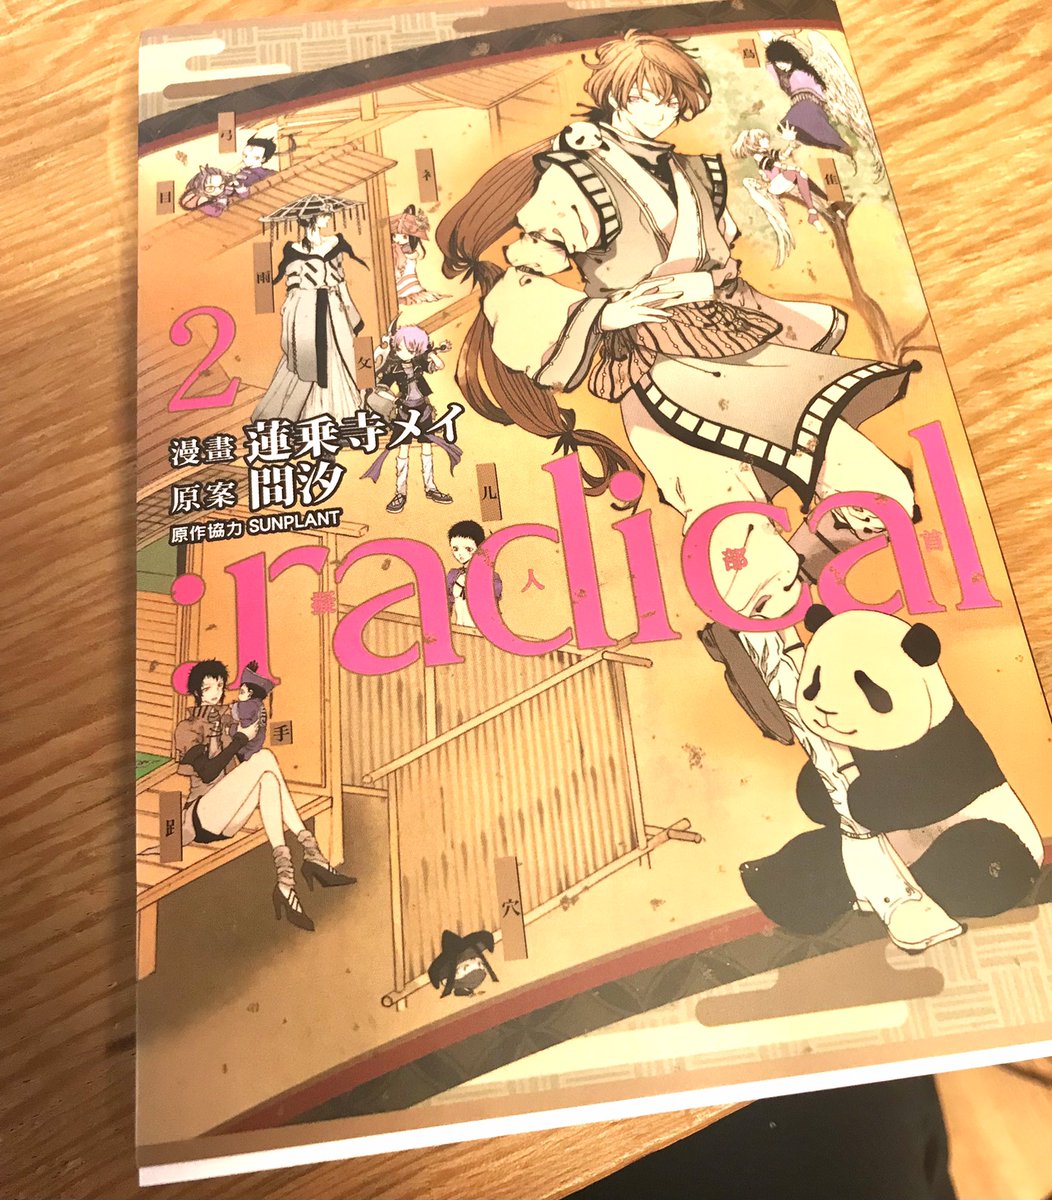 少し前に、
 #部首擬人化 漫画「:radical 2巻」中国語繁体字翻訳版
が手元に届きました💞💞

漢字の漫画なので、全文漢字になってて大興奮です。
中国語勉強中なので、自コミックスが教科書になるのがとても嬉しいです。まだ半分くらいしか読めませんが😂関わって下さった全ての皆様に感謝です。 